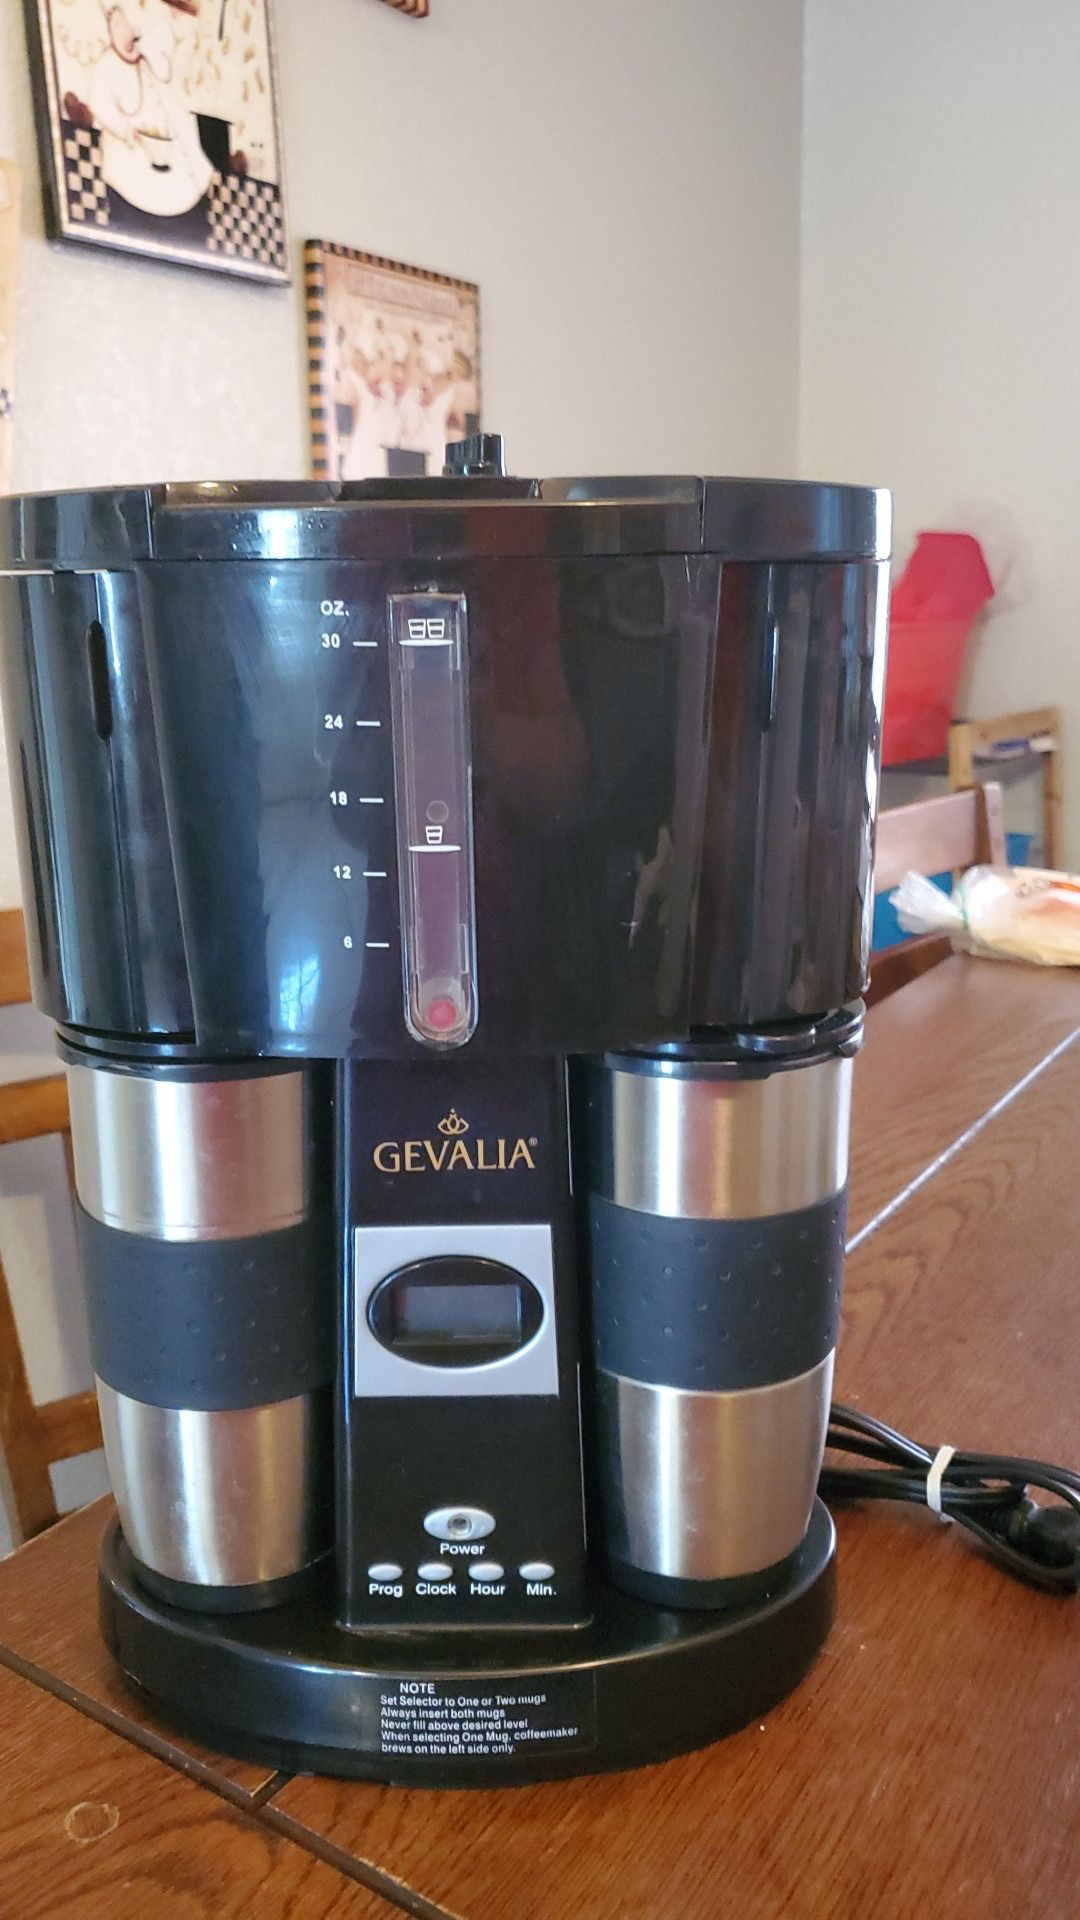 Gevalia Double coffee maker